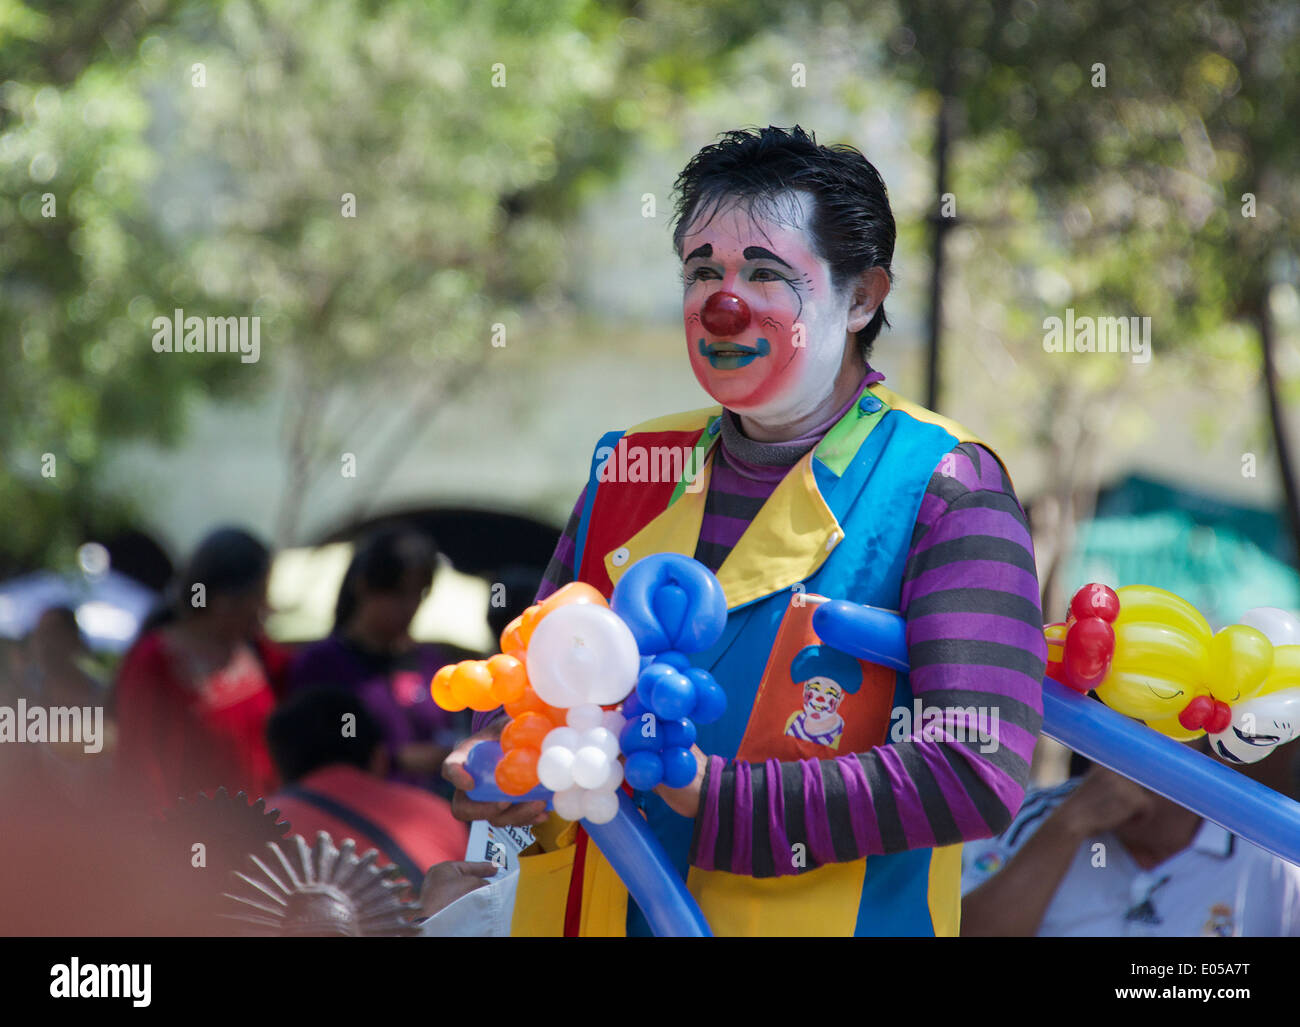 Balloon seller with painted face Zocalo Oaxaca City Mexico Stock Photo